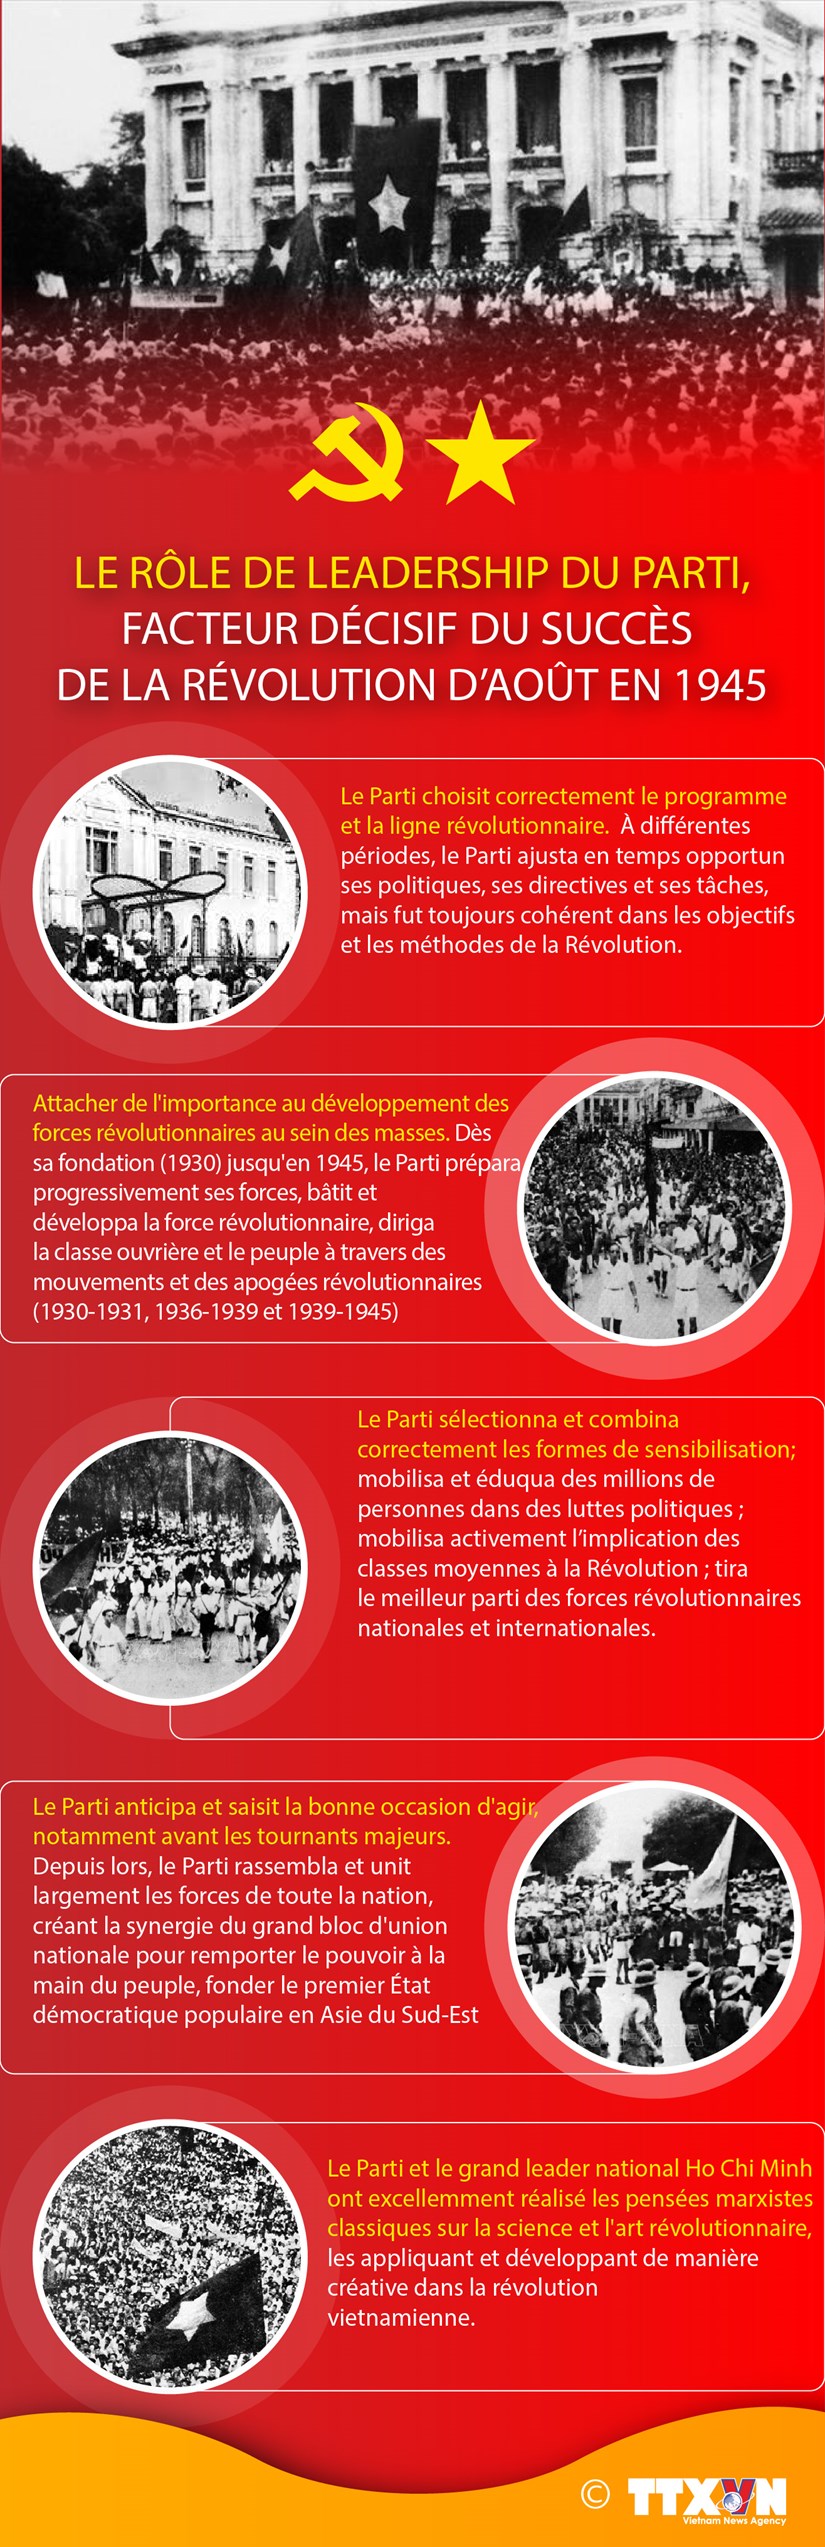 Le role de leadership du Parti, facteur decisif du succes de la Revolution d’aout en 1945 hinh anh 1